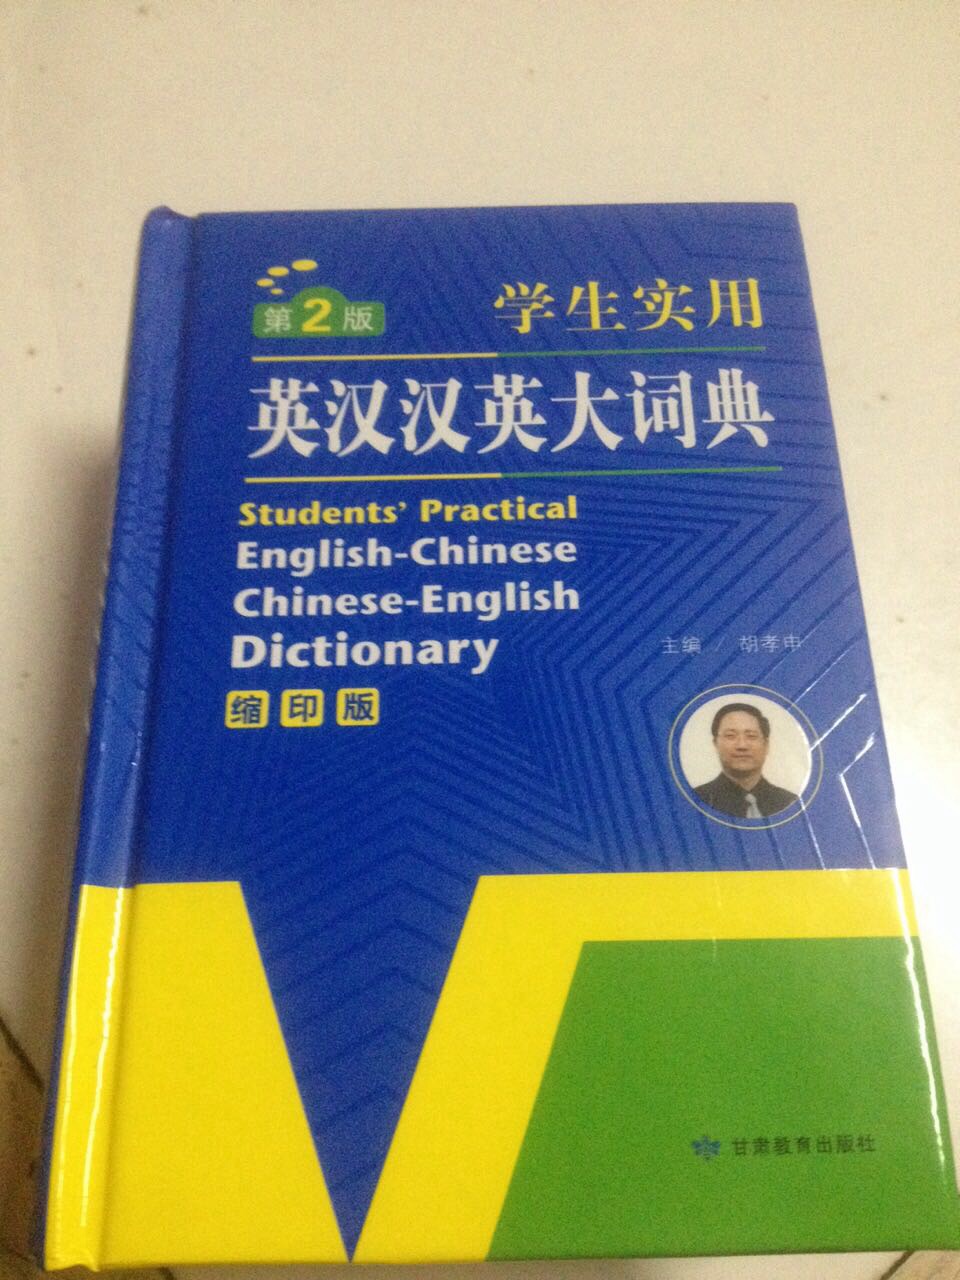 很好用，中文英文都有，就是太小了